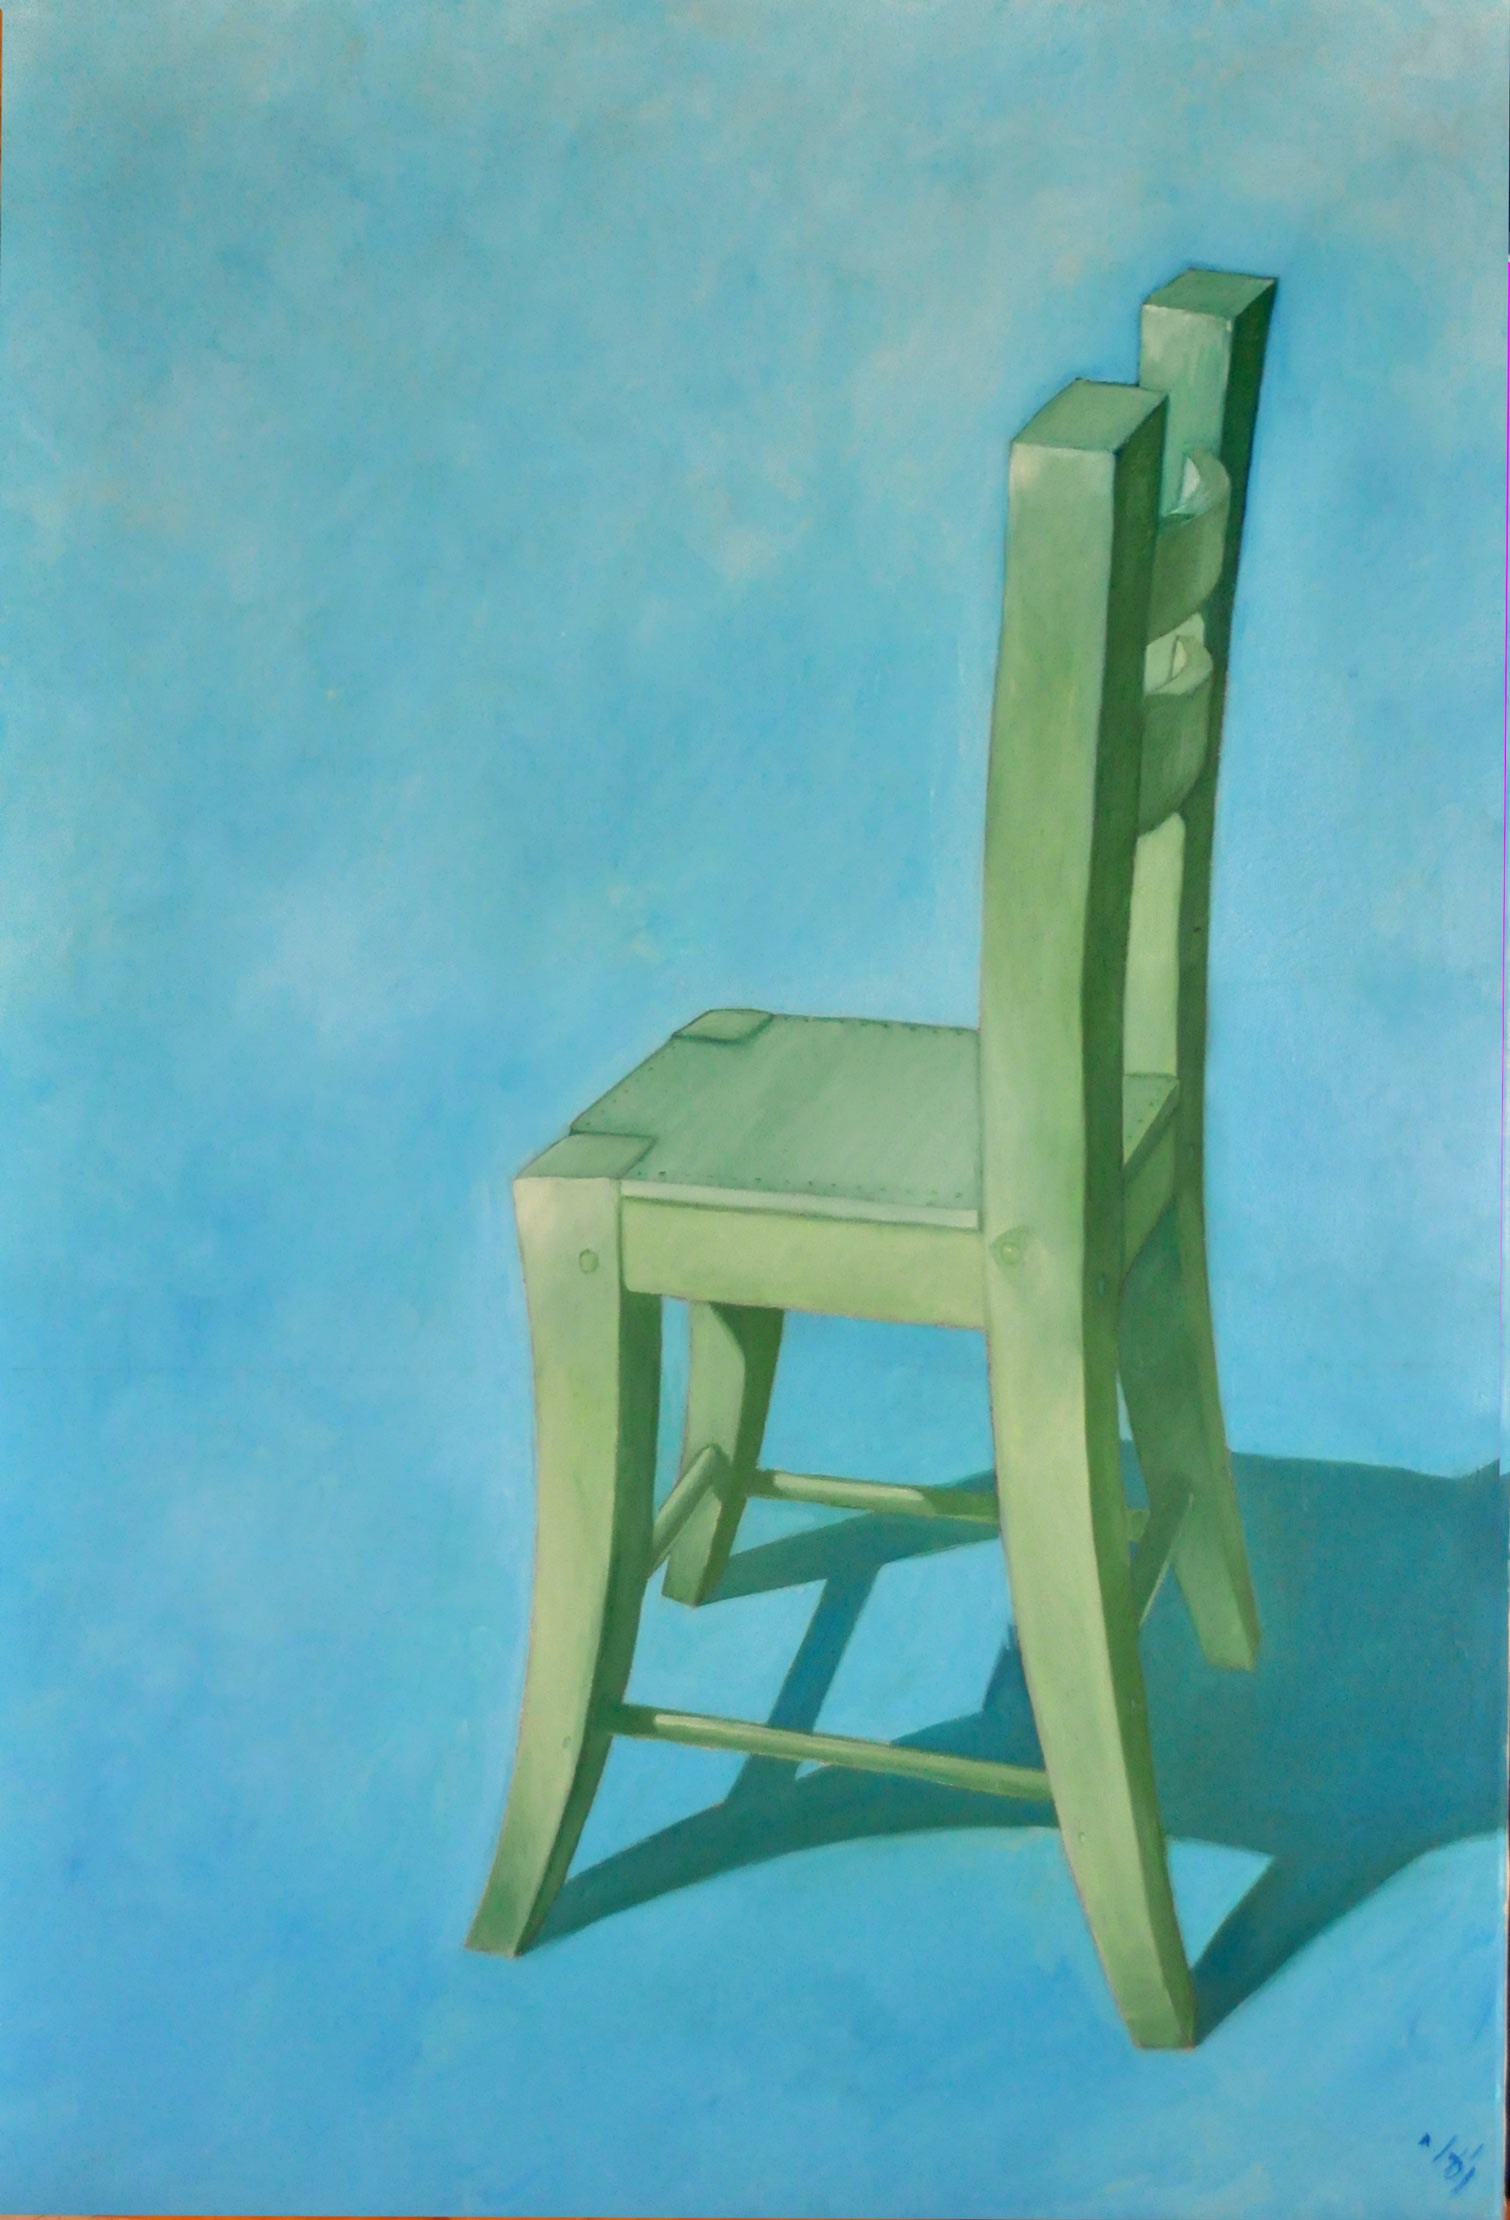 Une chaise verte sur fond bleu. Au sol, l'ombre portée redessine la chaise.